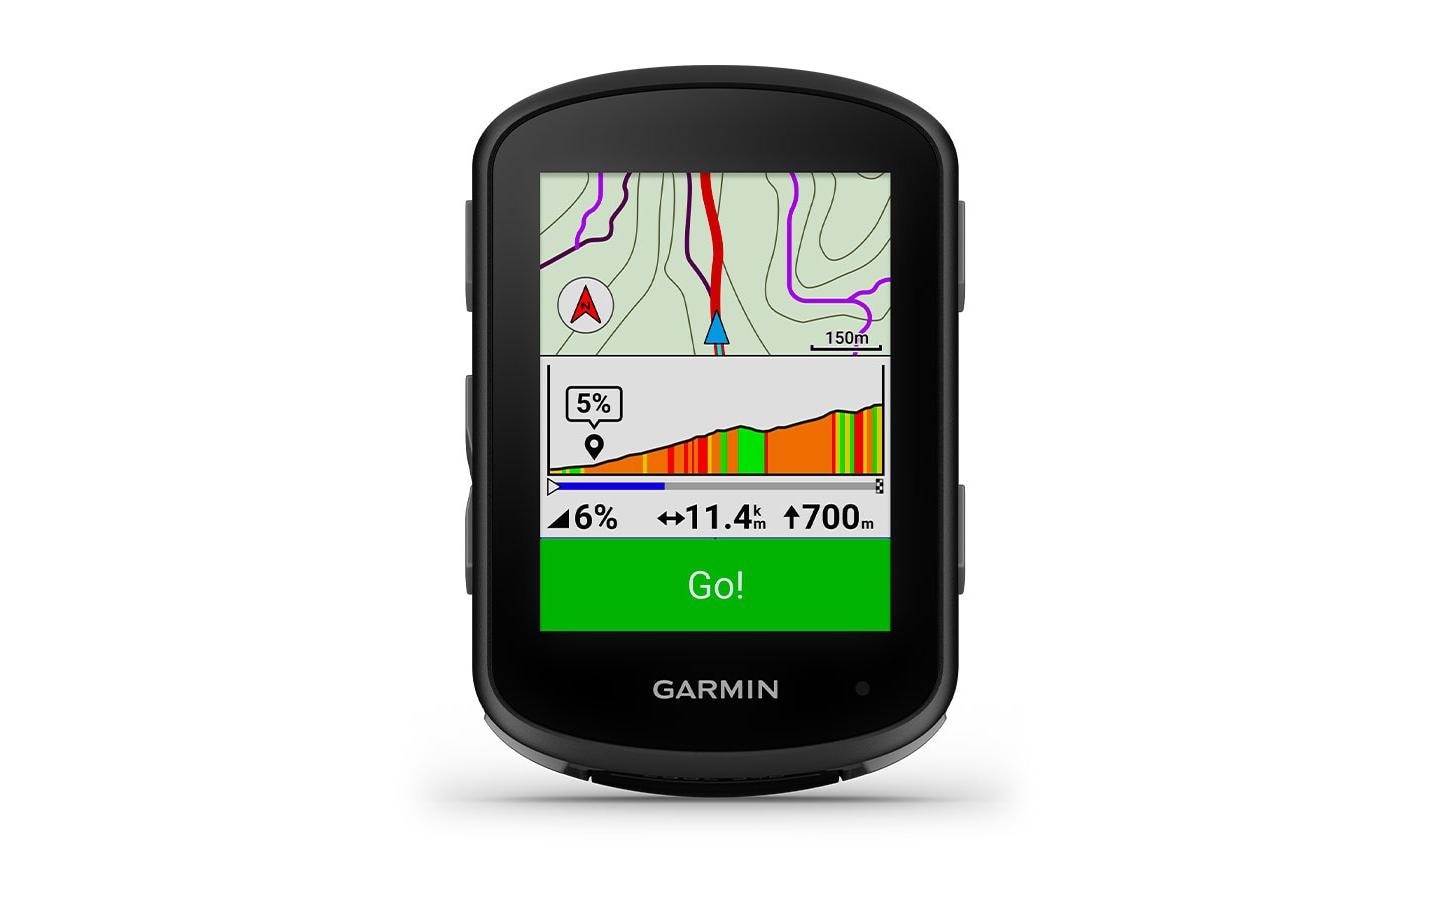 Garmin Fahrrad-Navigationsgerät »540«